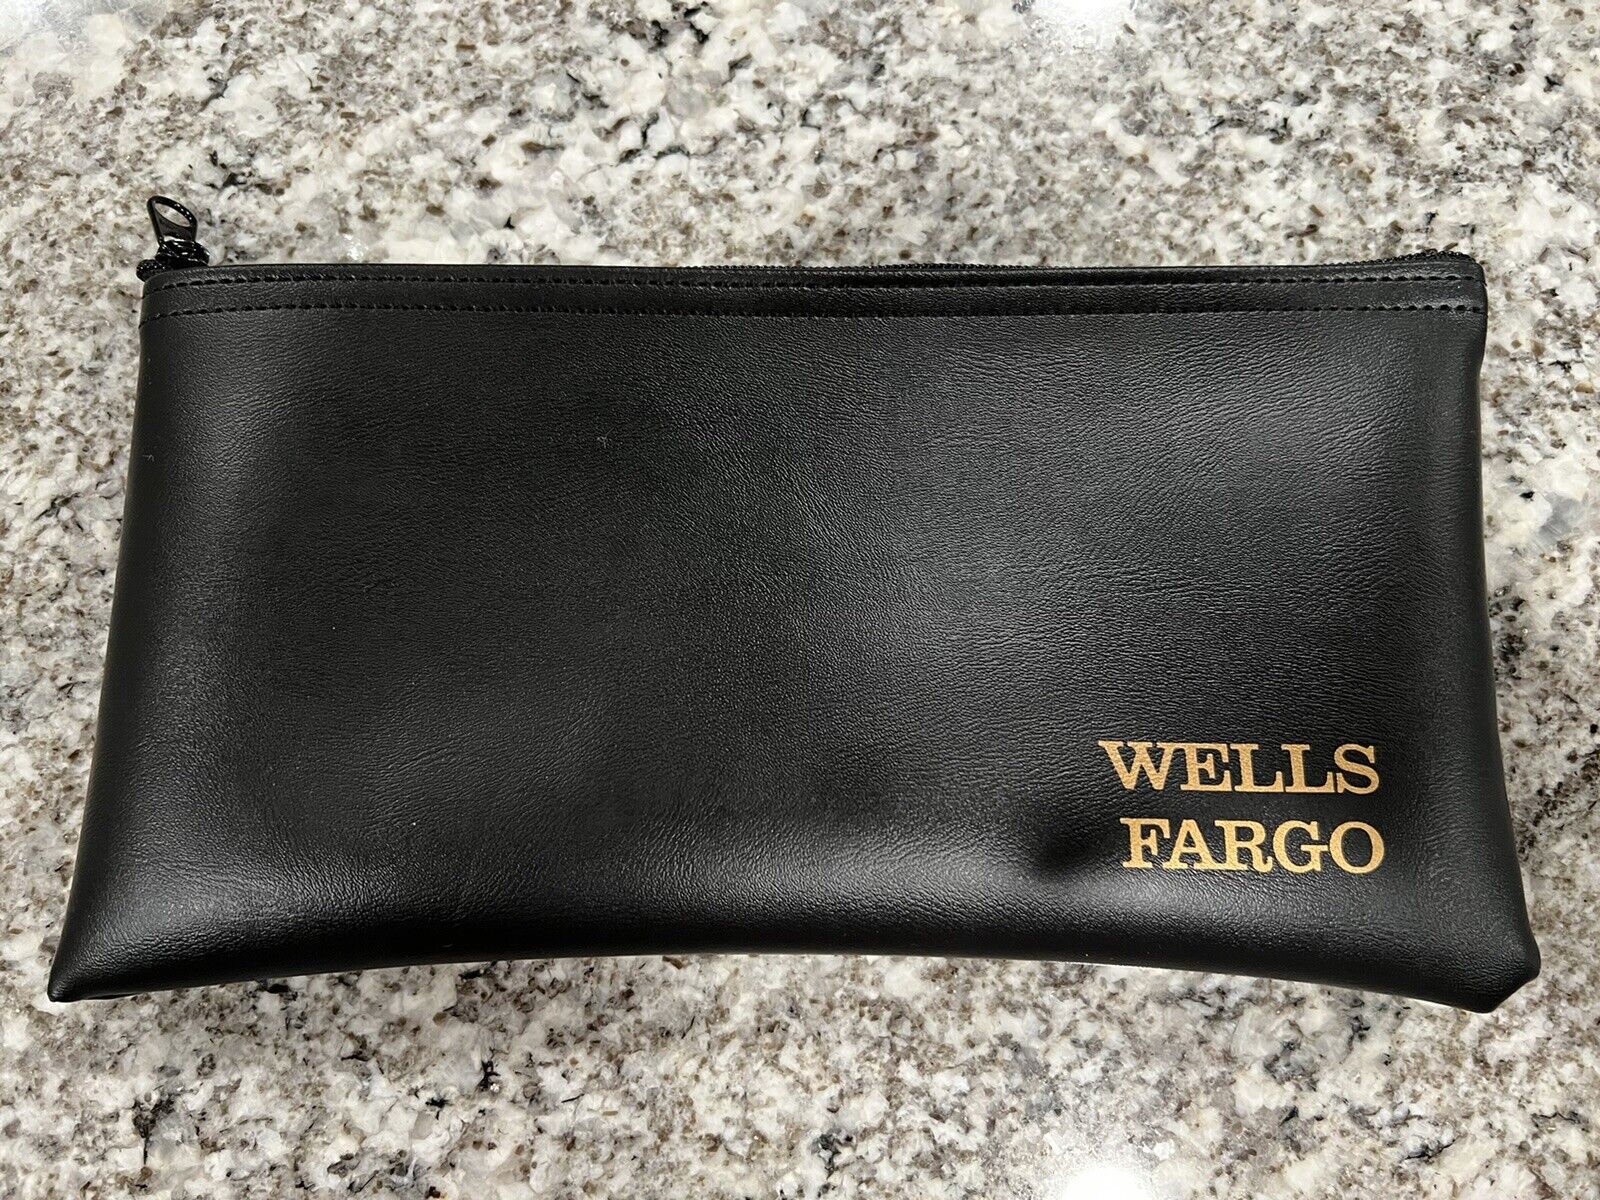 New Wells Fargo Deposit Merchant Bag Bank Pouch Zipper Safe Money Organizer